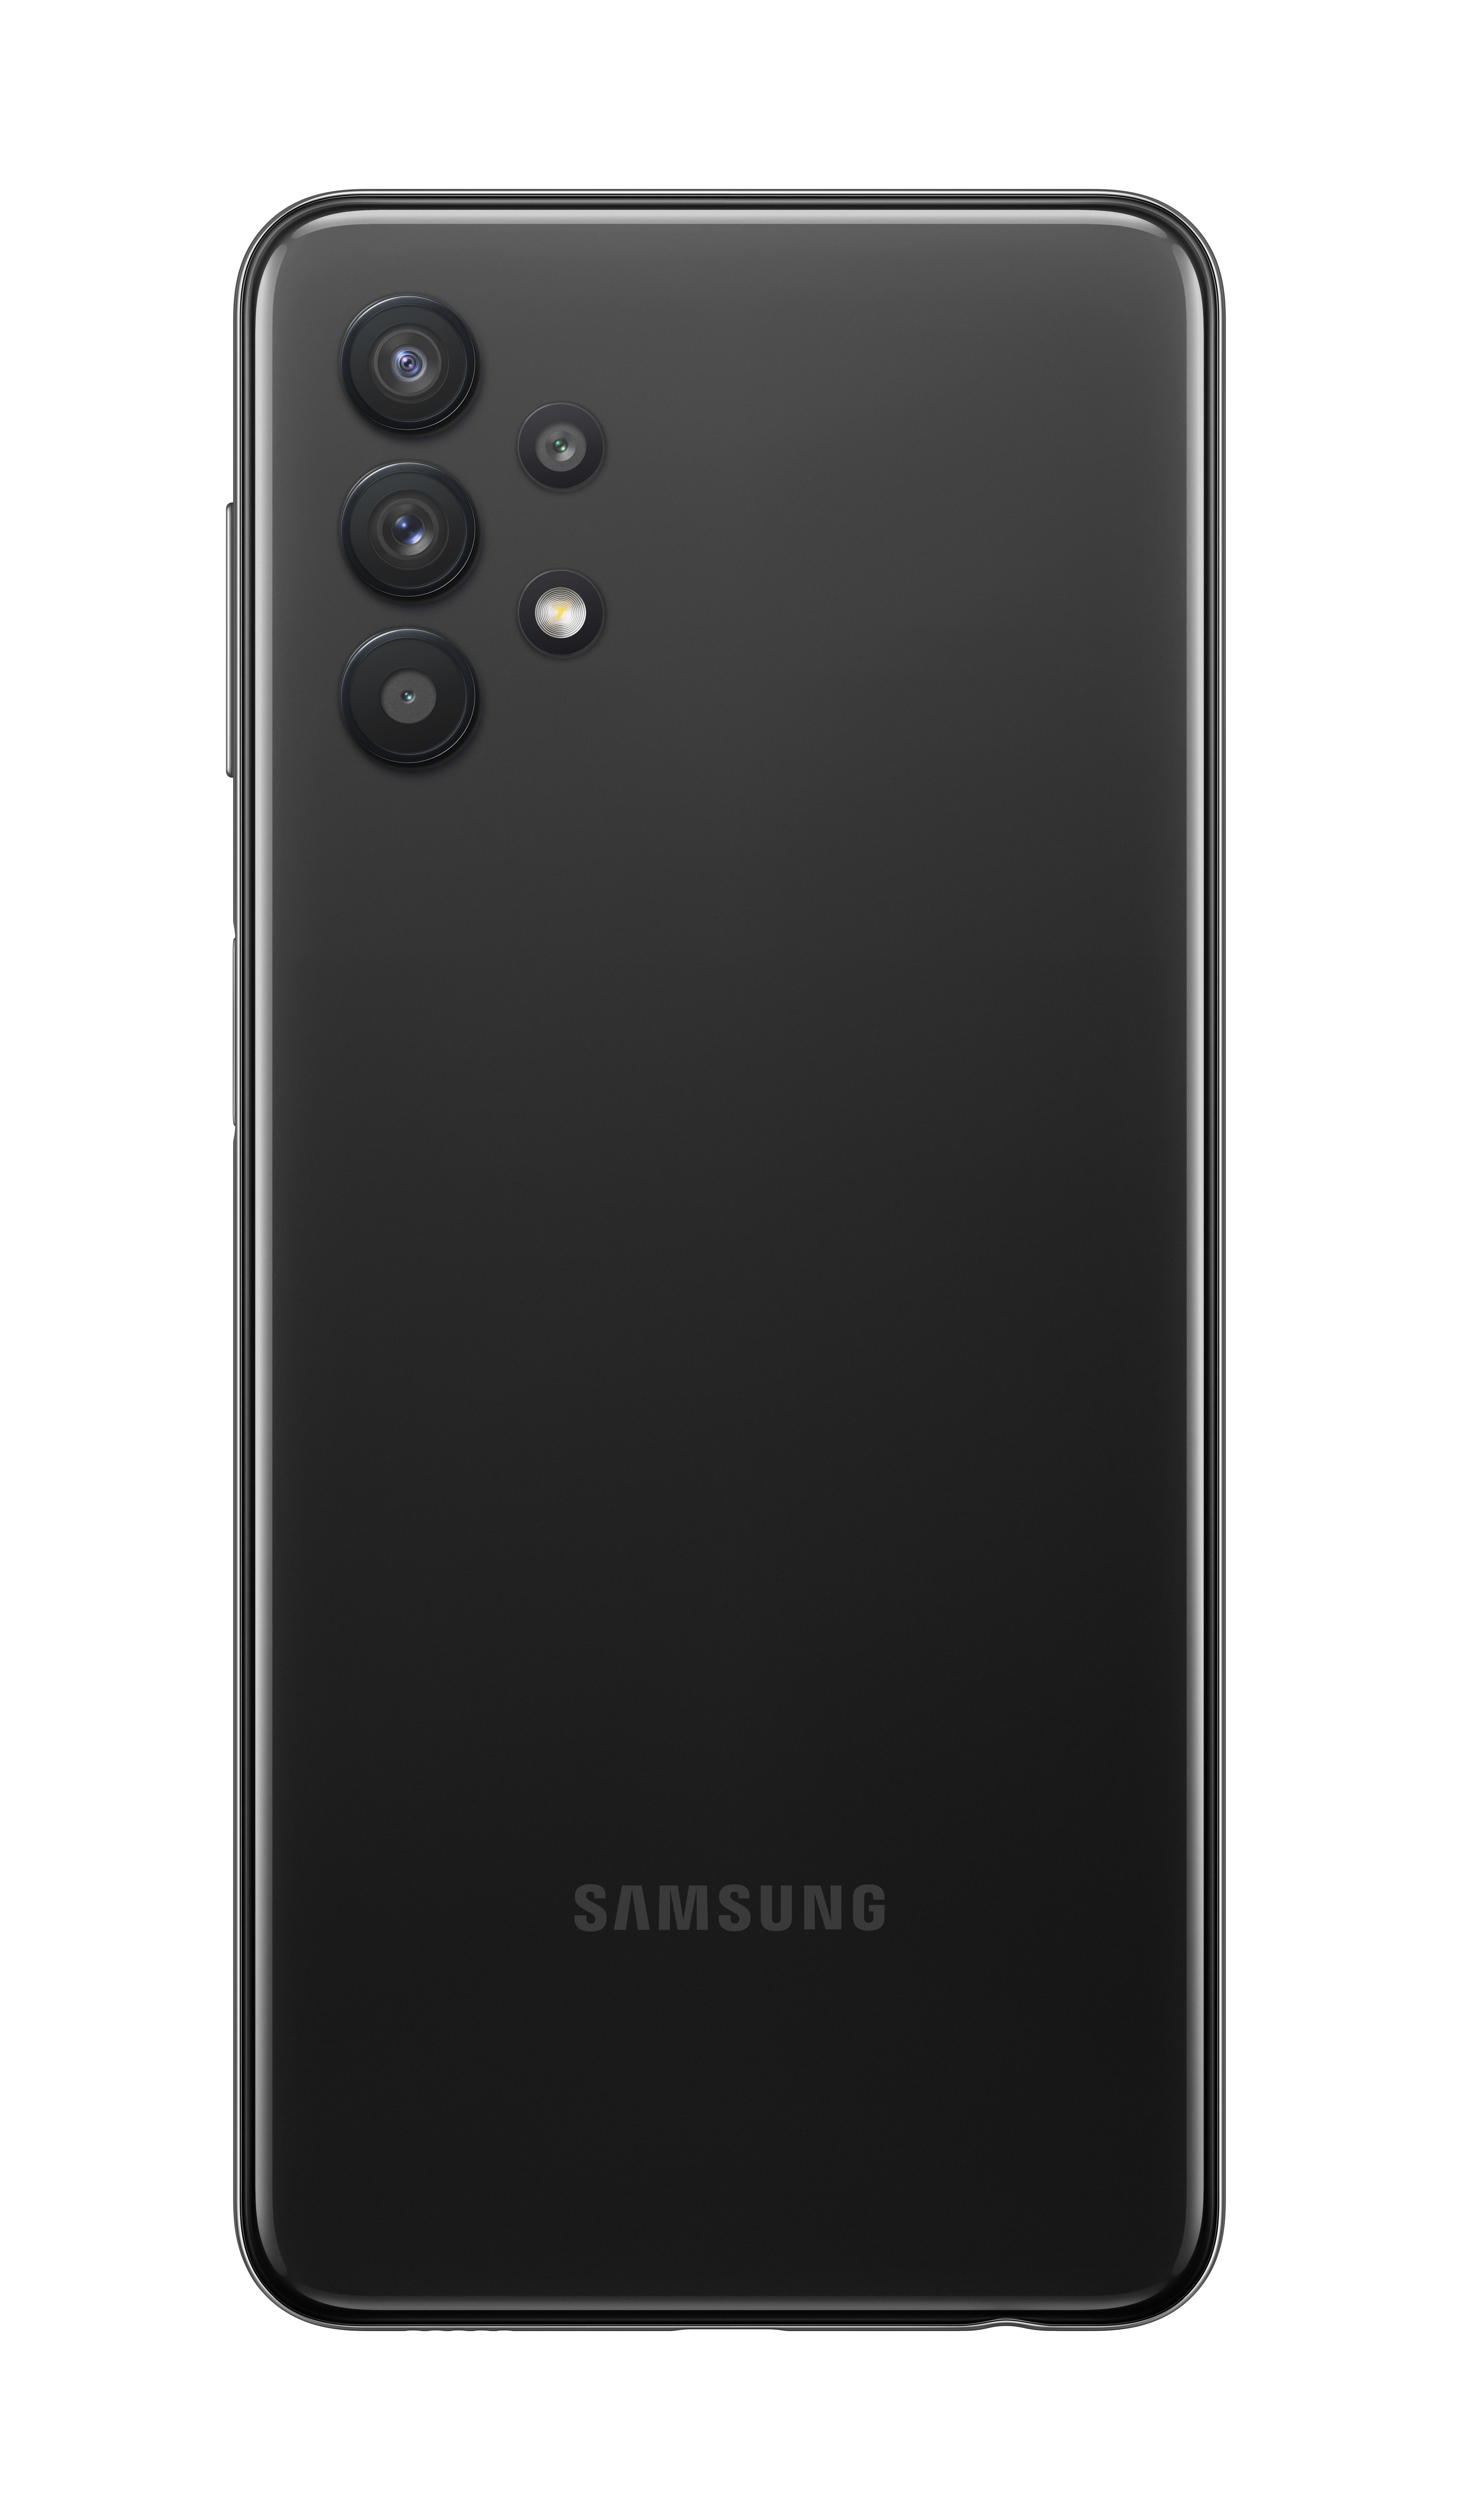 Samsung GALAXY A32 5G A326B Dual-SIM 128GB schwarz Android 11.0 Smartphone